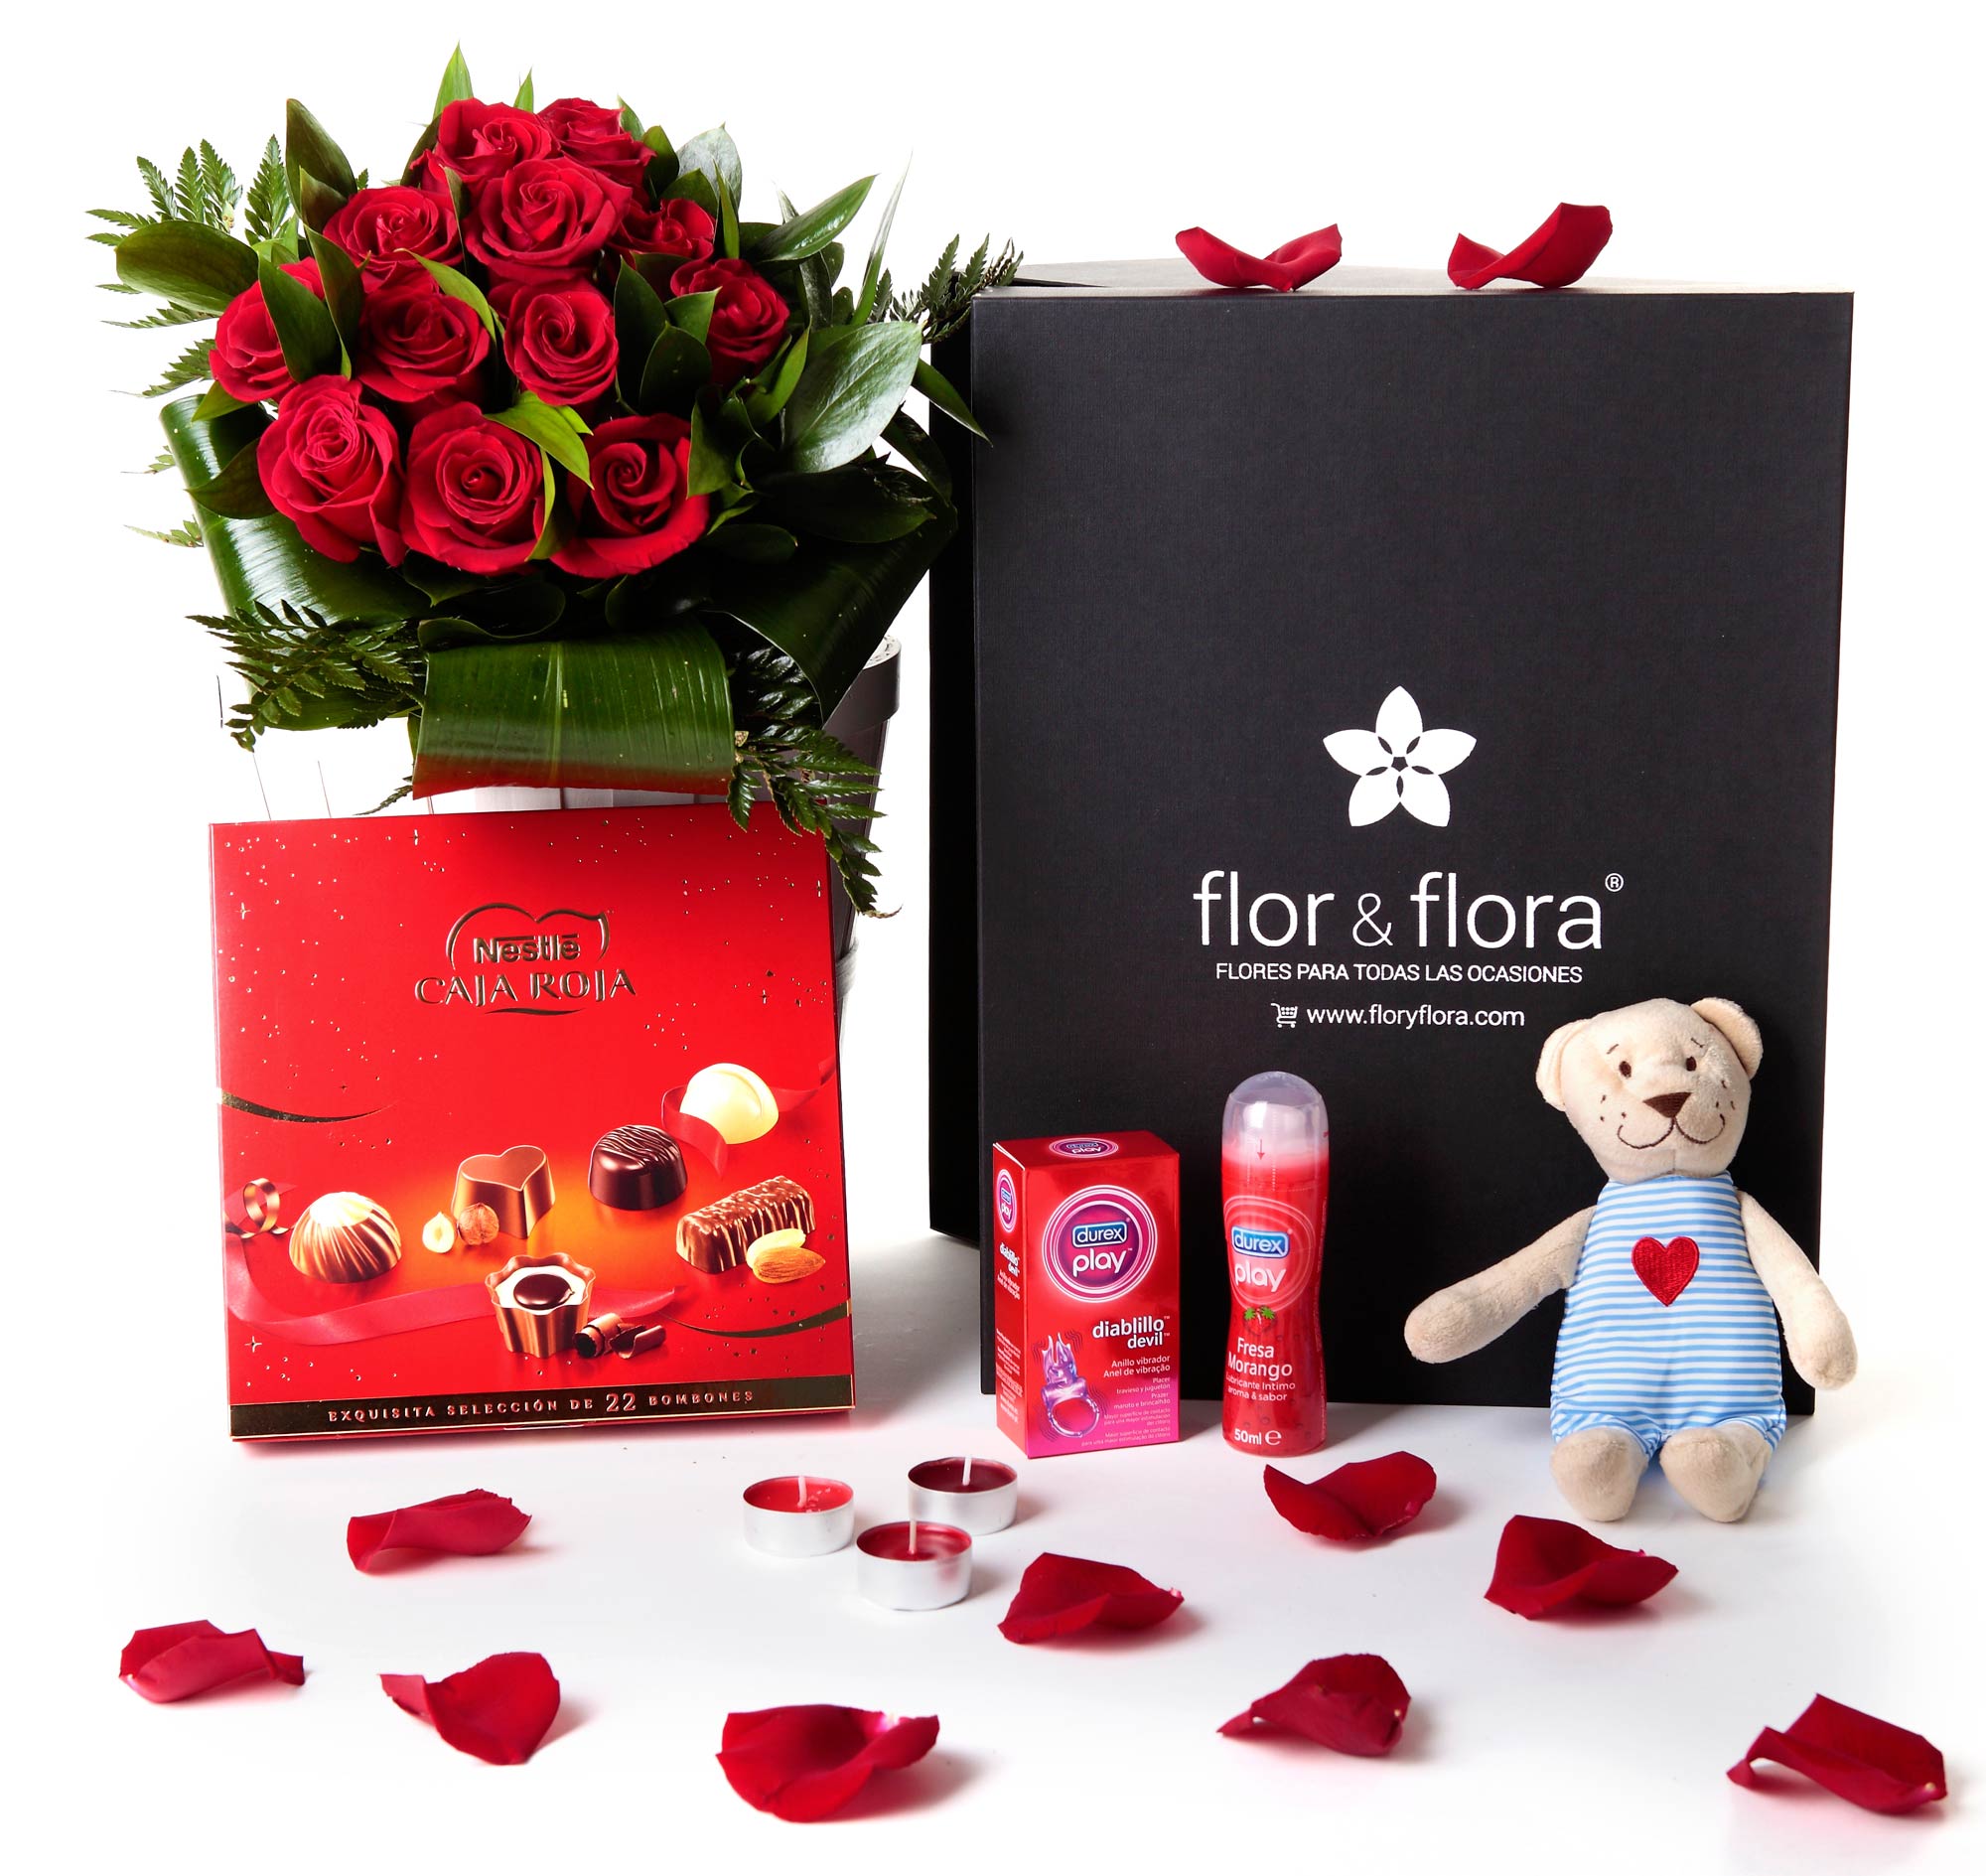 https://www.infoesquelas.com/imgs/tienda_productos/tienda_productos_caja-regalo-rosas-rojas-san-valentin-picante_70_san-valentin-caja-negra-grande-rojas_1392064295.jpg